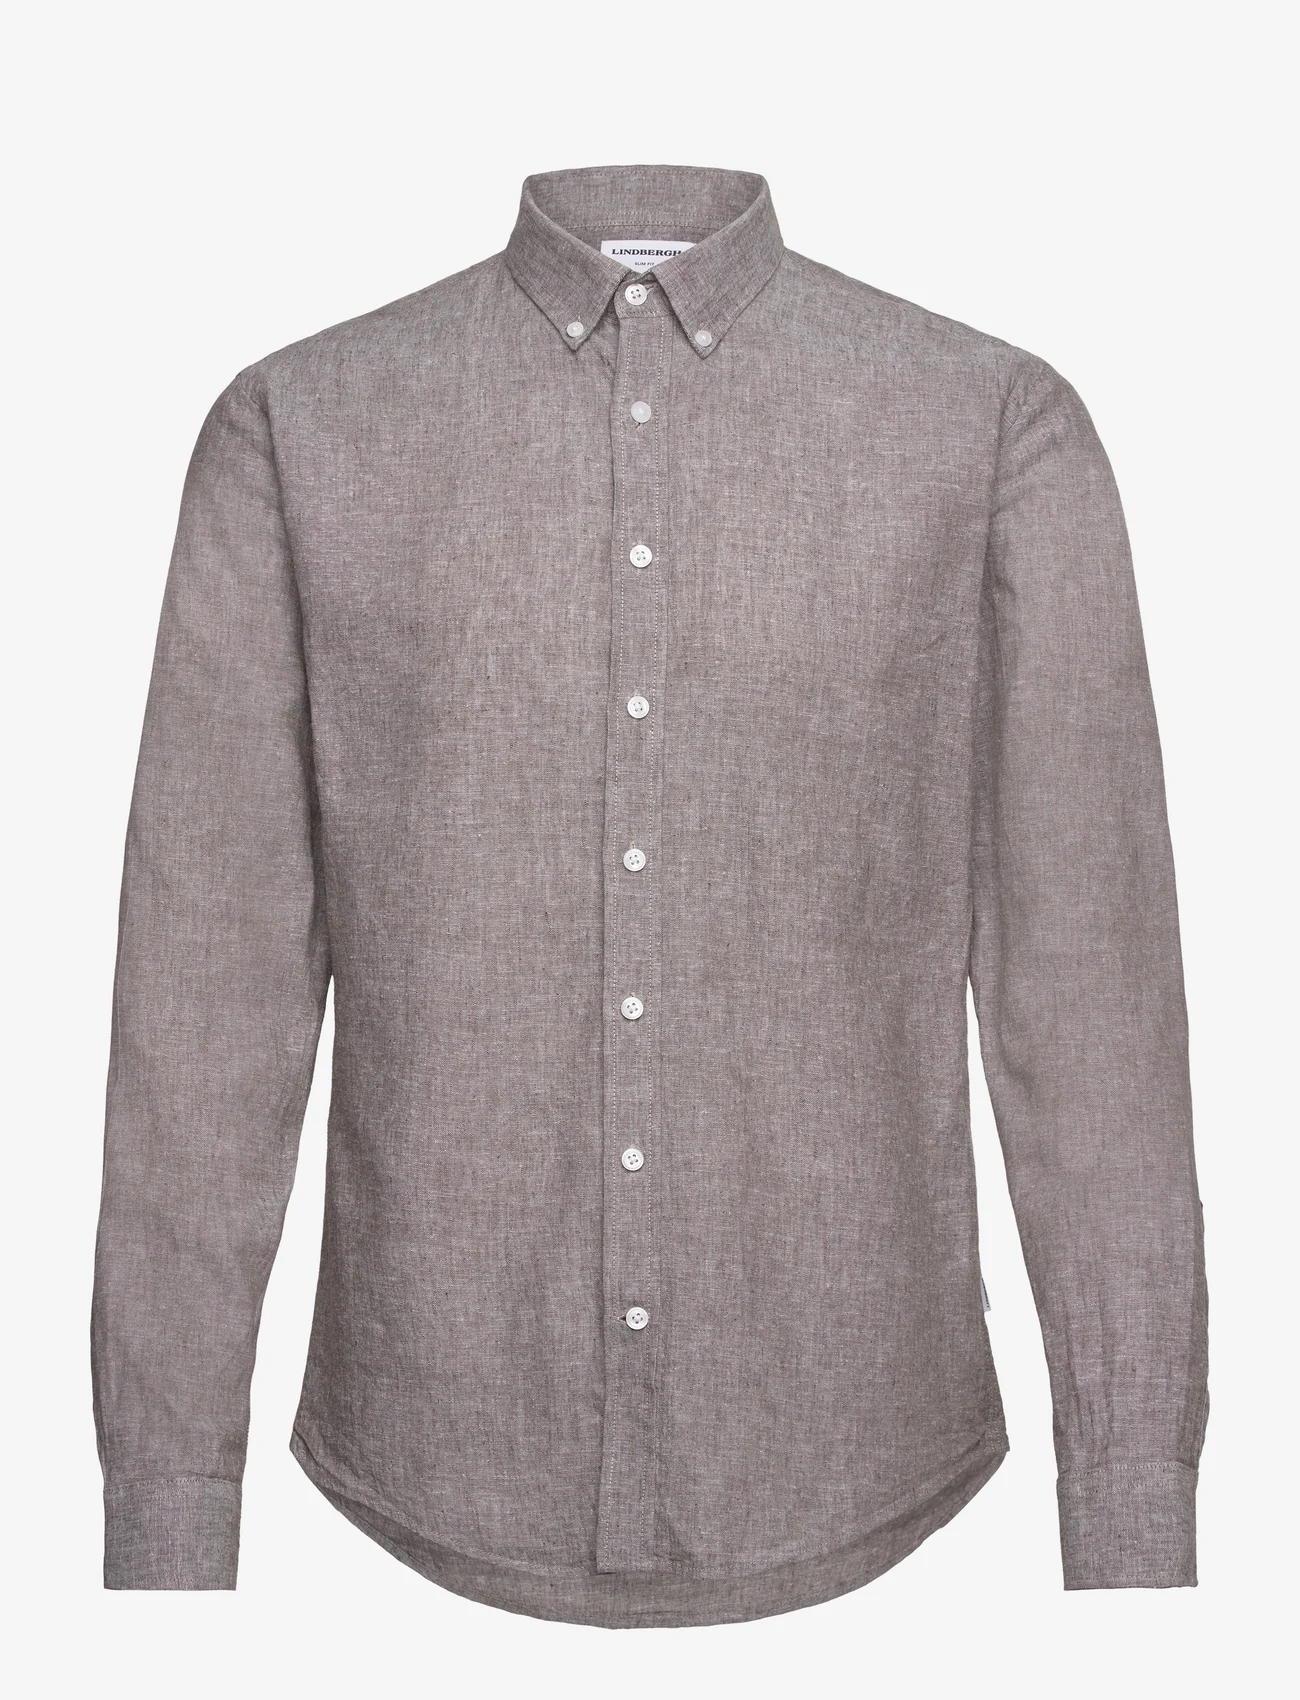 Lindbergh - Linen/cotton shirt L/S - linen shirts - dk stone - 0